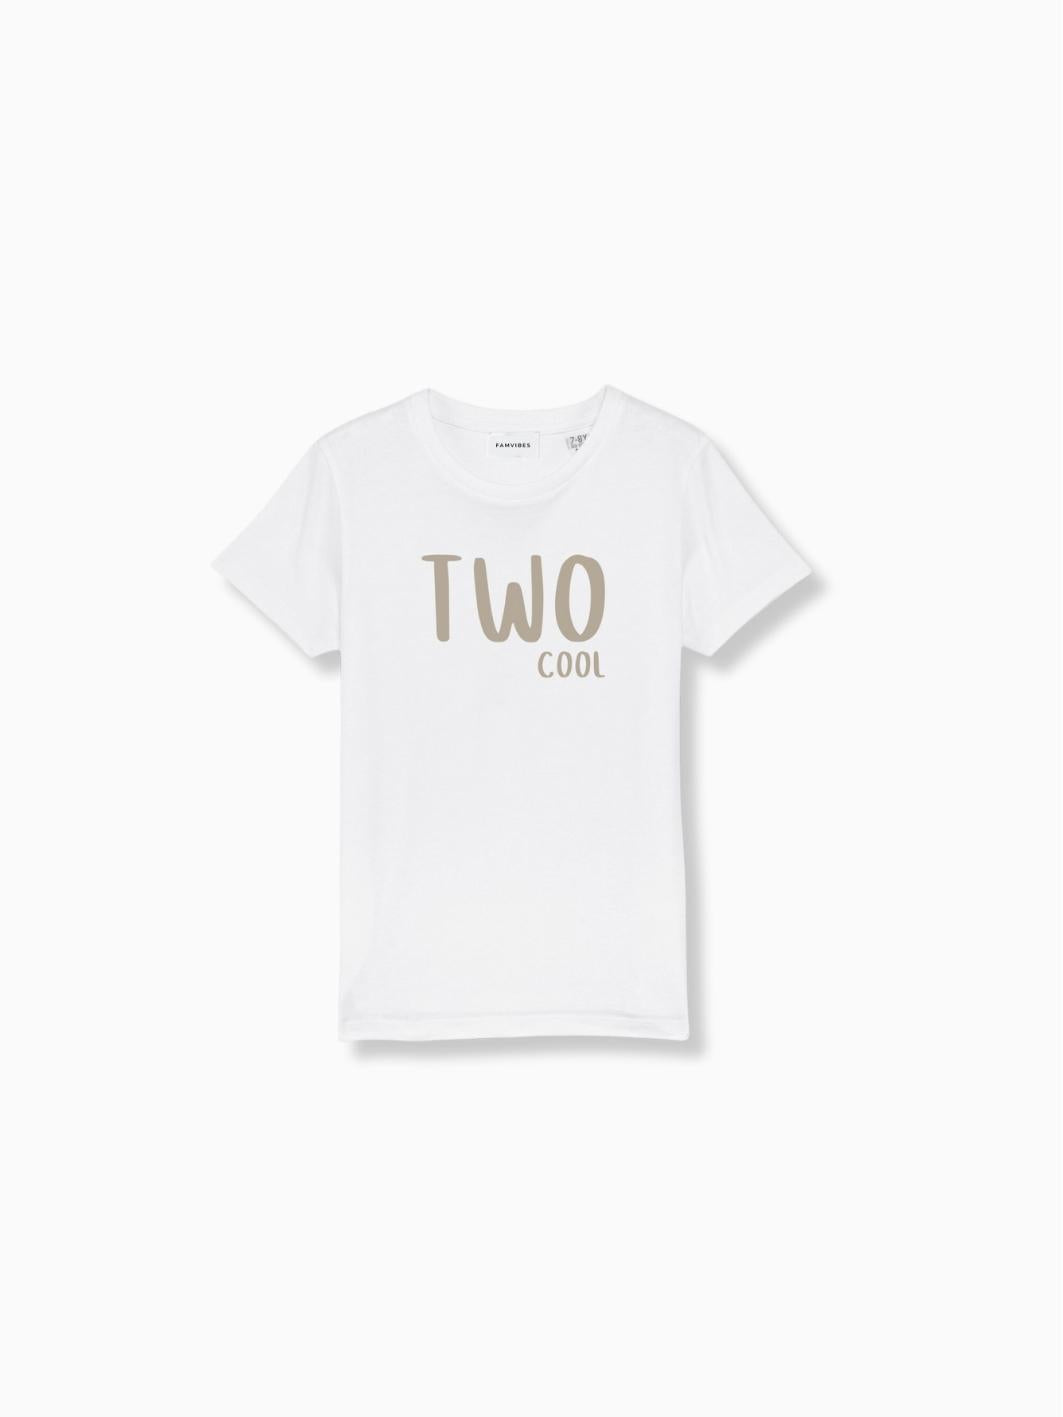 TWO - Kids Meilenstein T-Shirt - FAMVIBES 